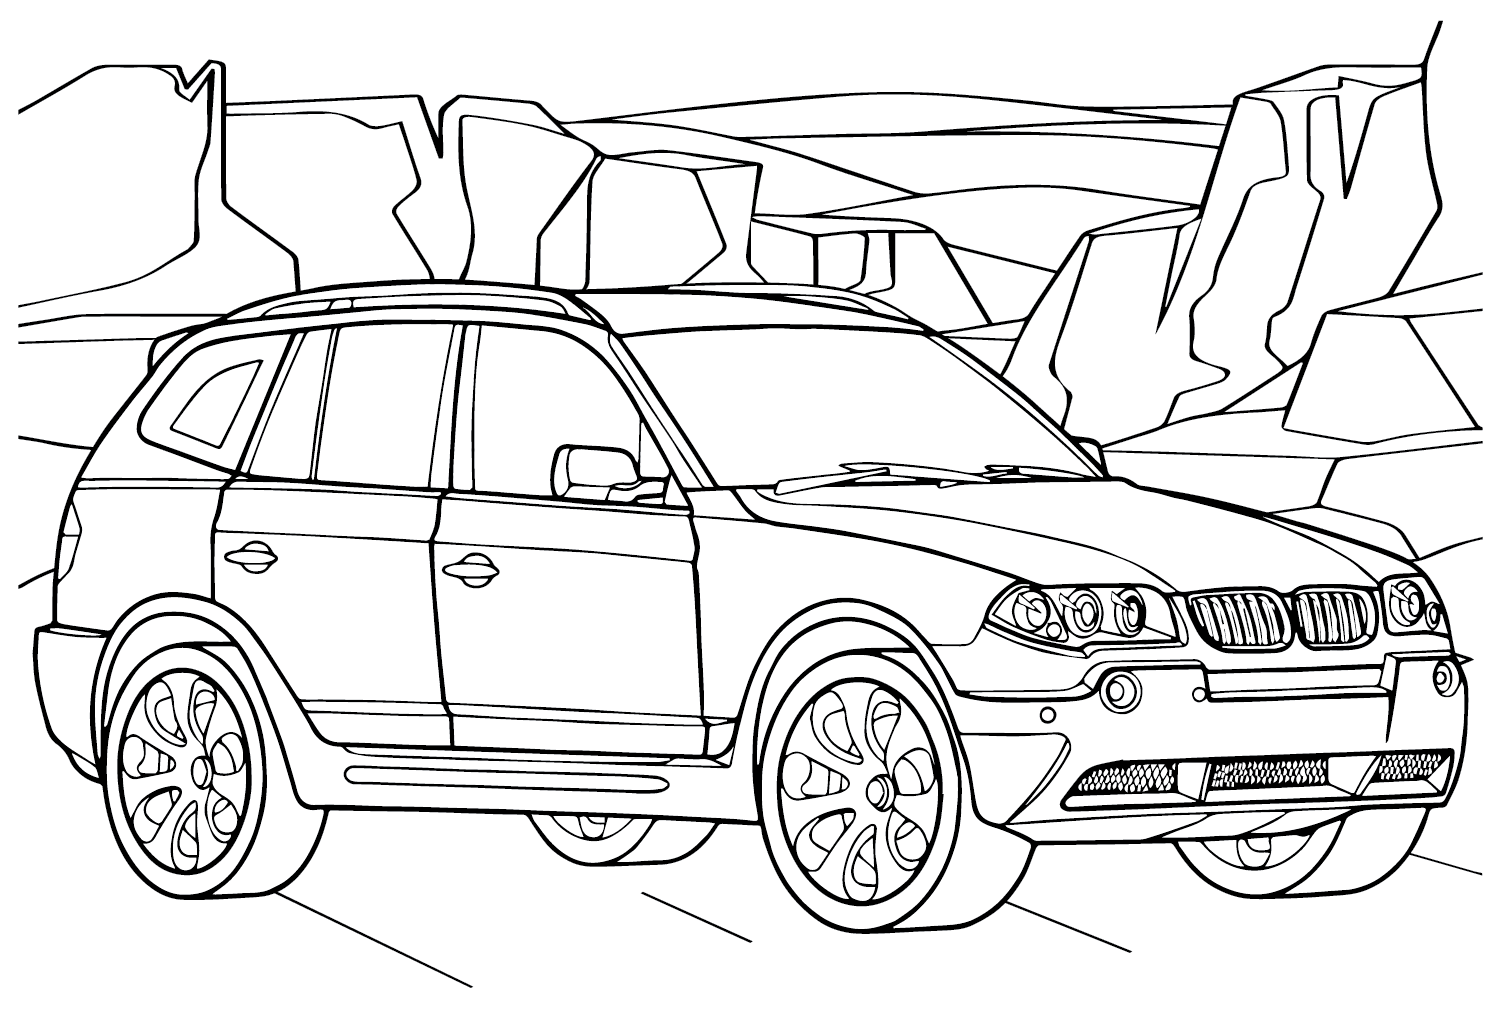 Página para colorir do BMW X3 da BMW